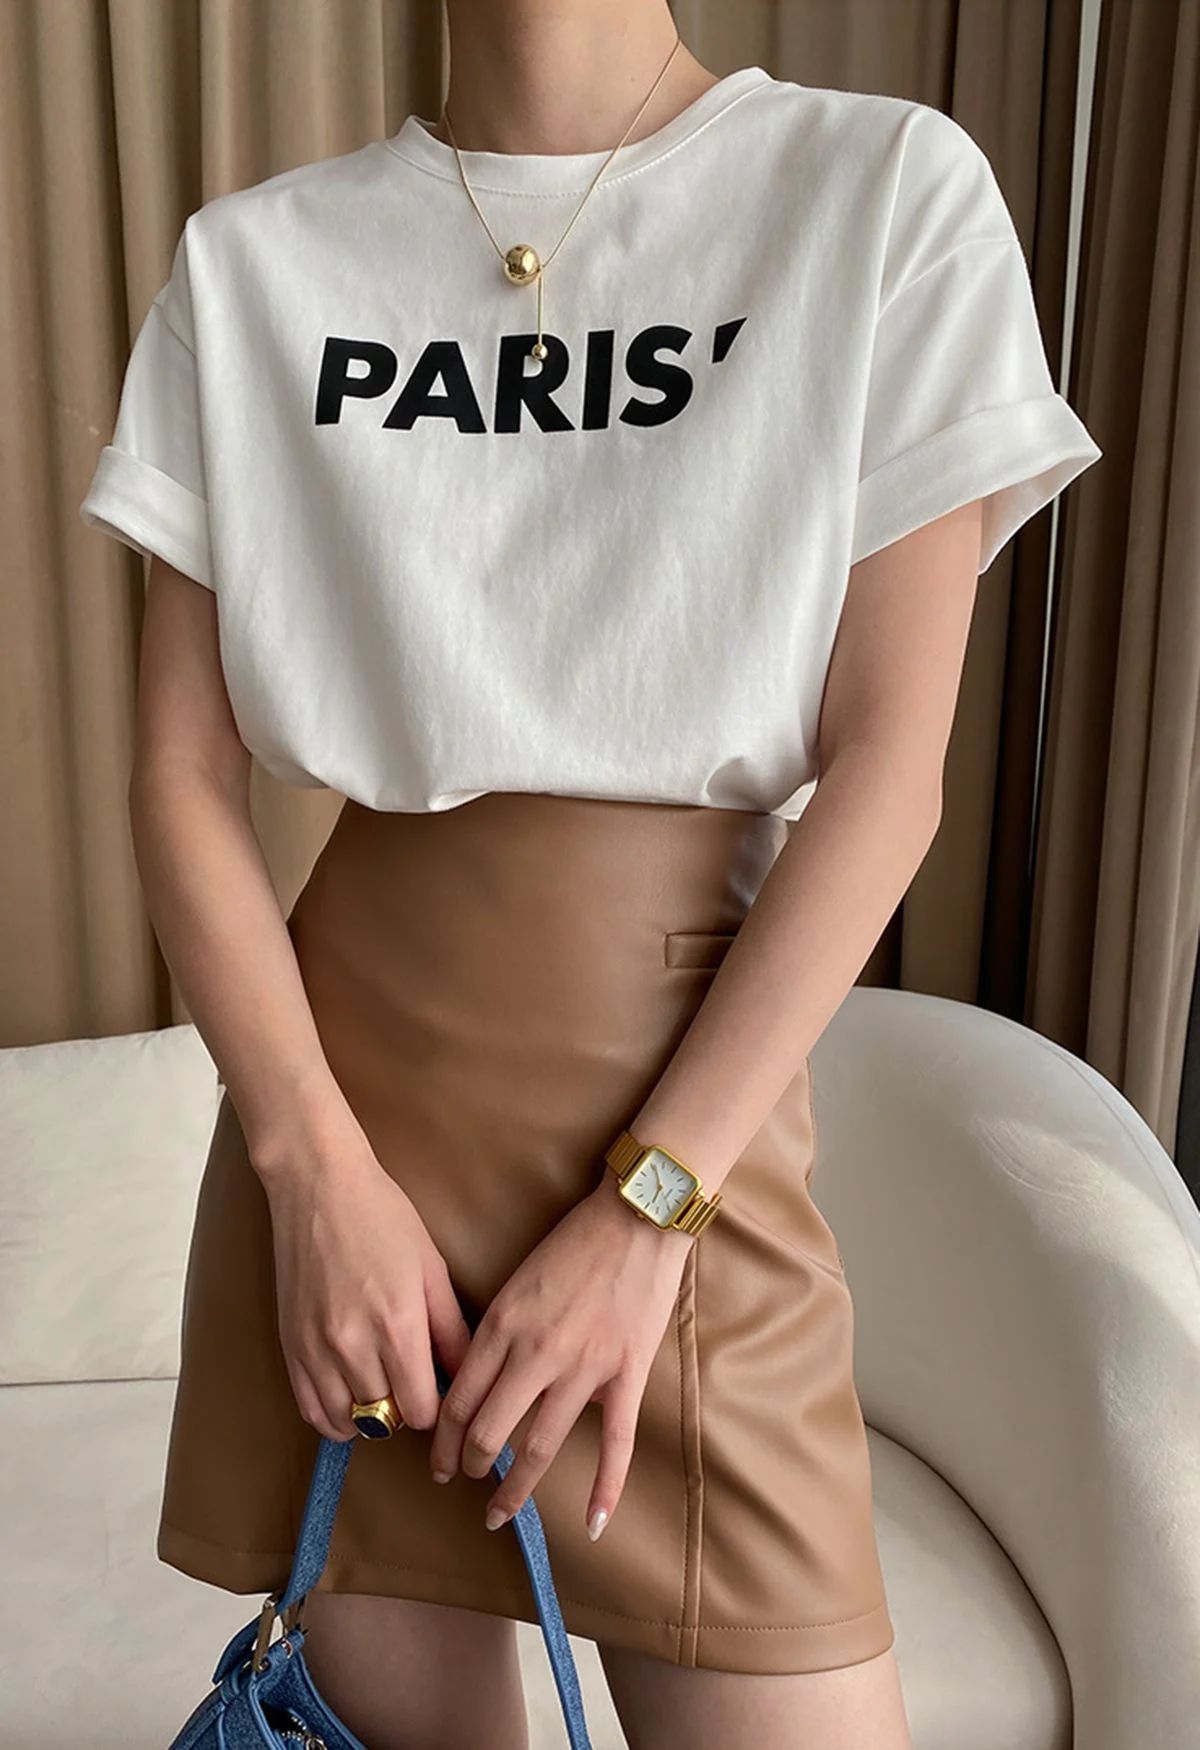 Paris Print Round Neck T-Shirt in White | Chicwish